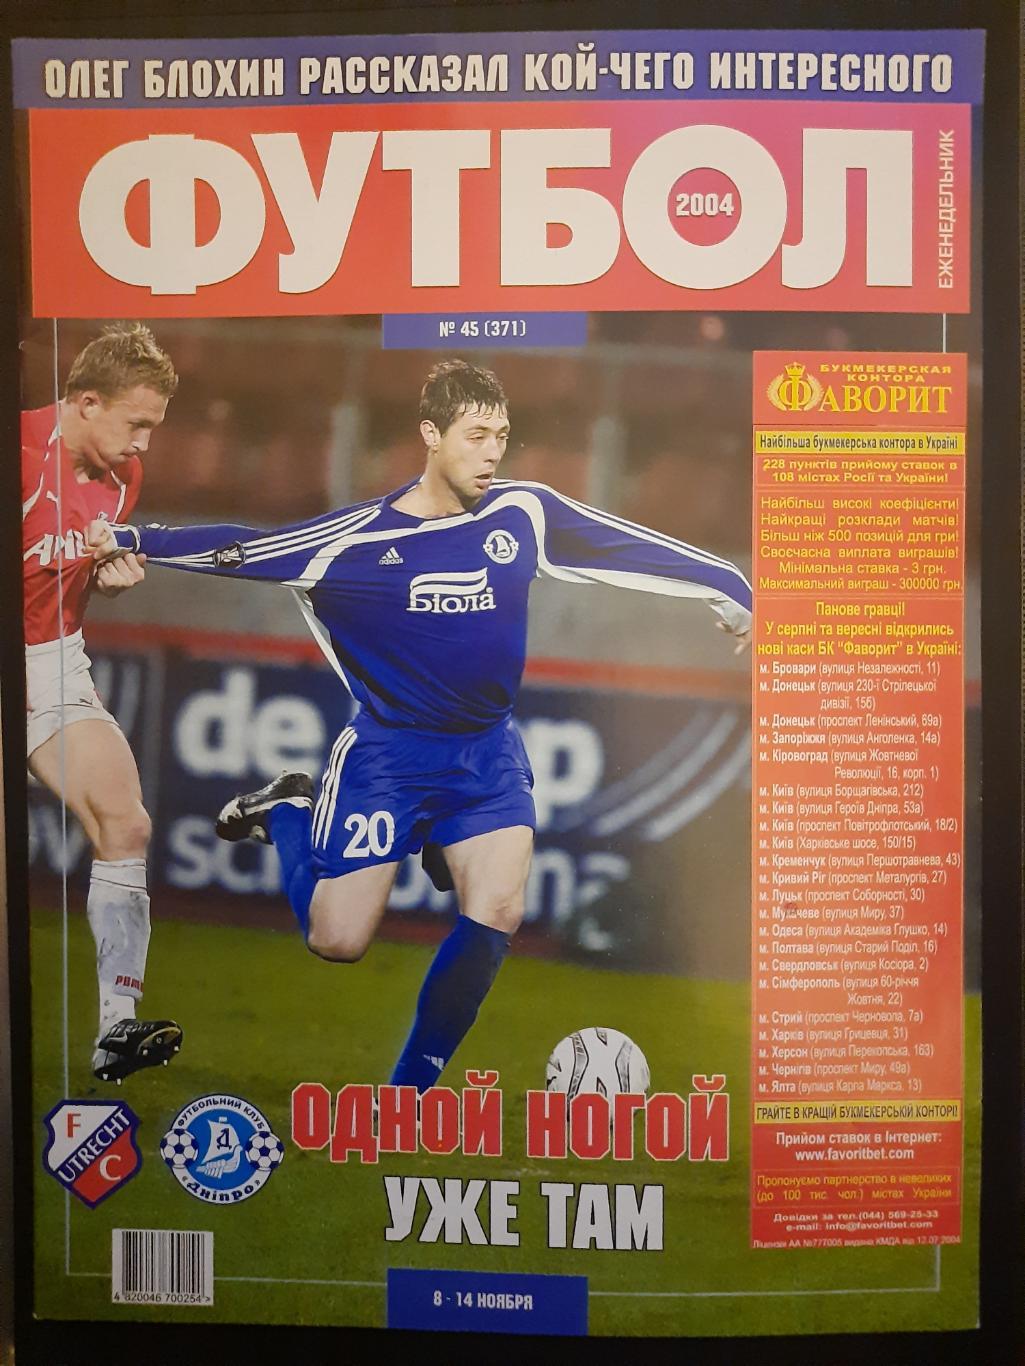 еженедельник Футбол #45 2004, Утрехт-Днепр,Рыкун, Зенден, Нистельрой..